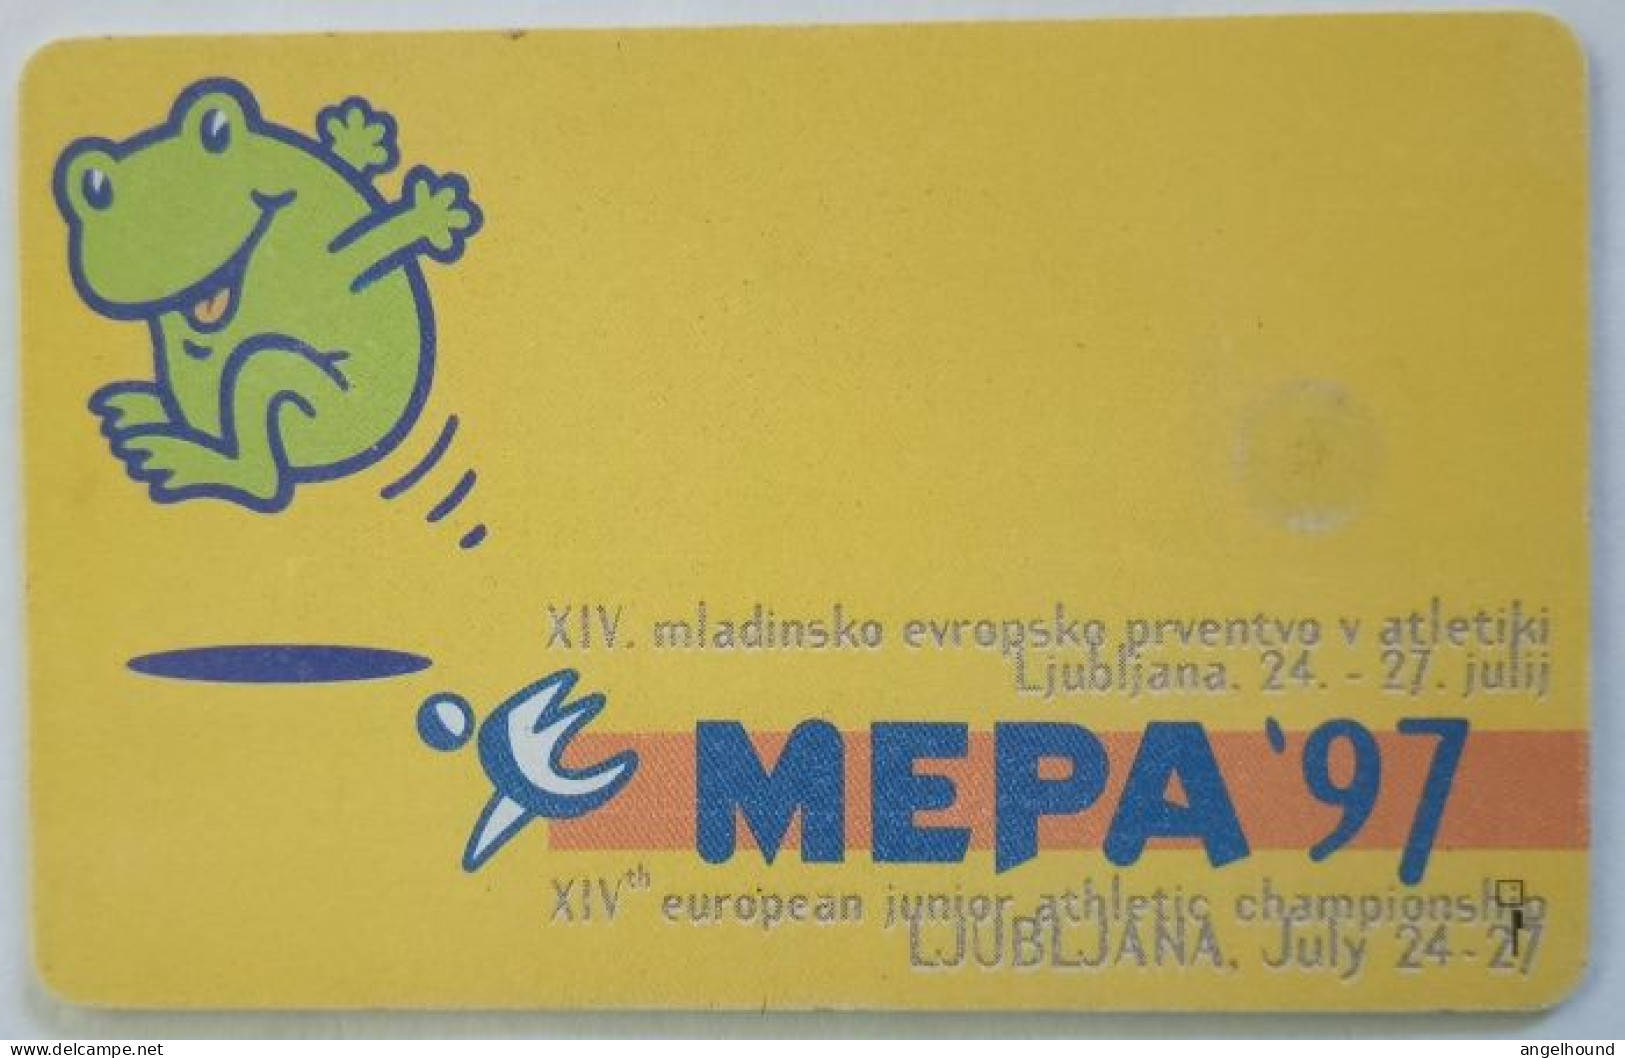 Slovenia 100 Unit  Chip Card - Kp Je Pogovor Nacin Zivljenja / MEPA ' 97 - Eslovenia